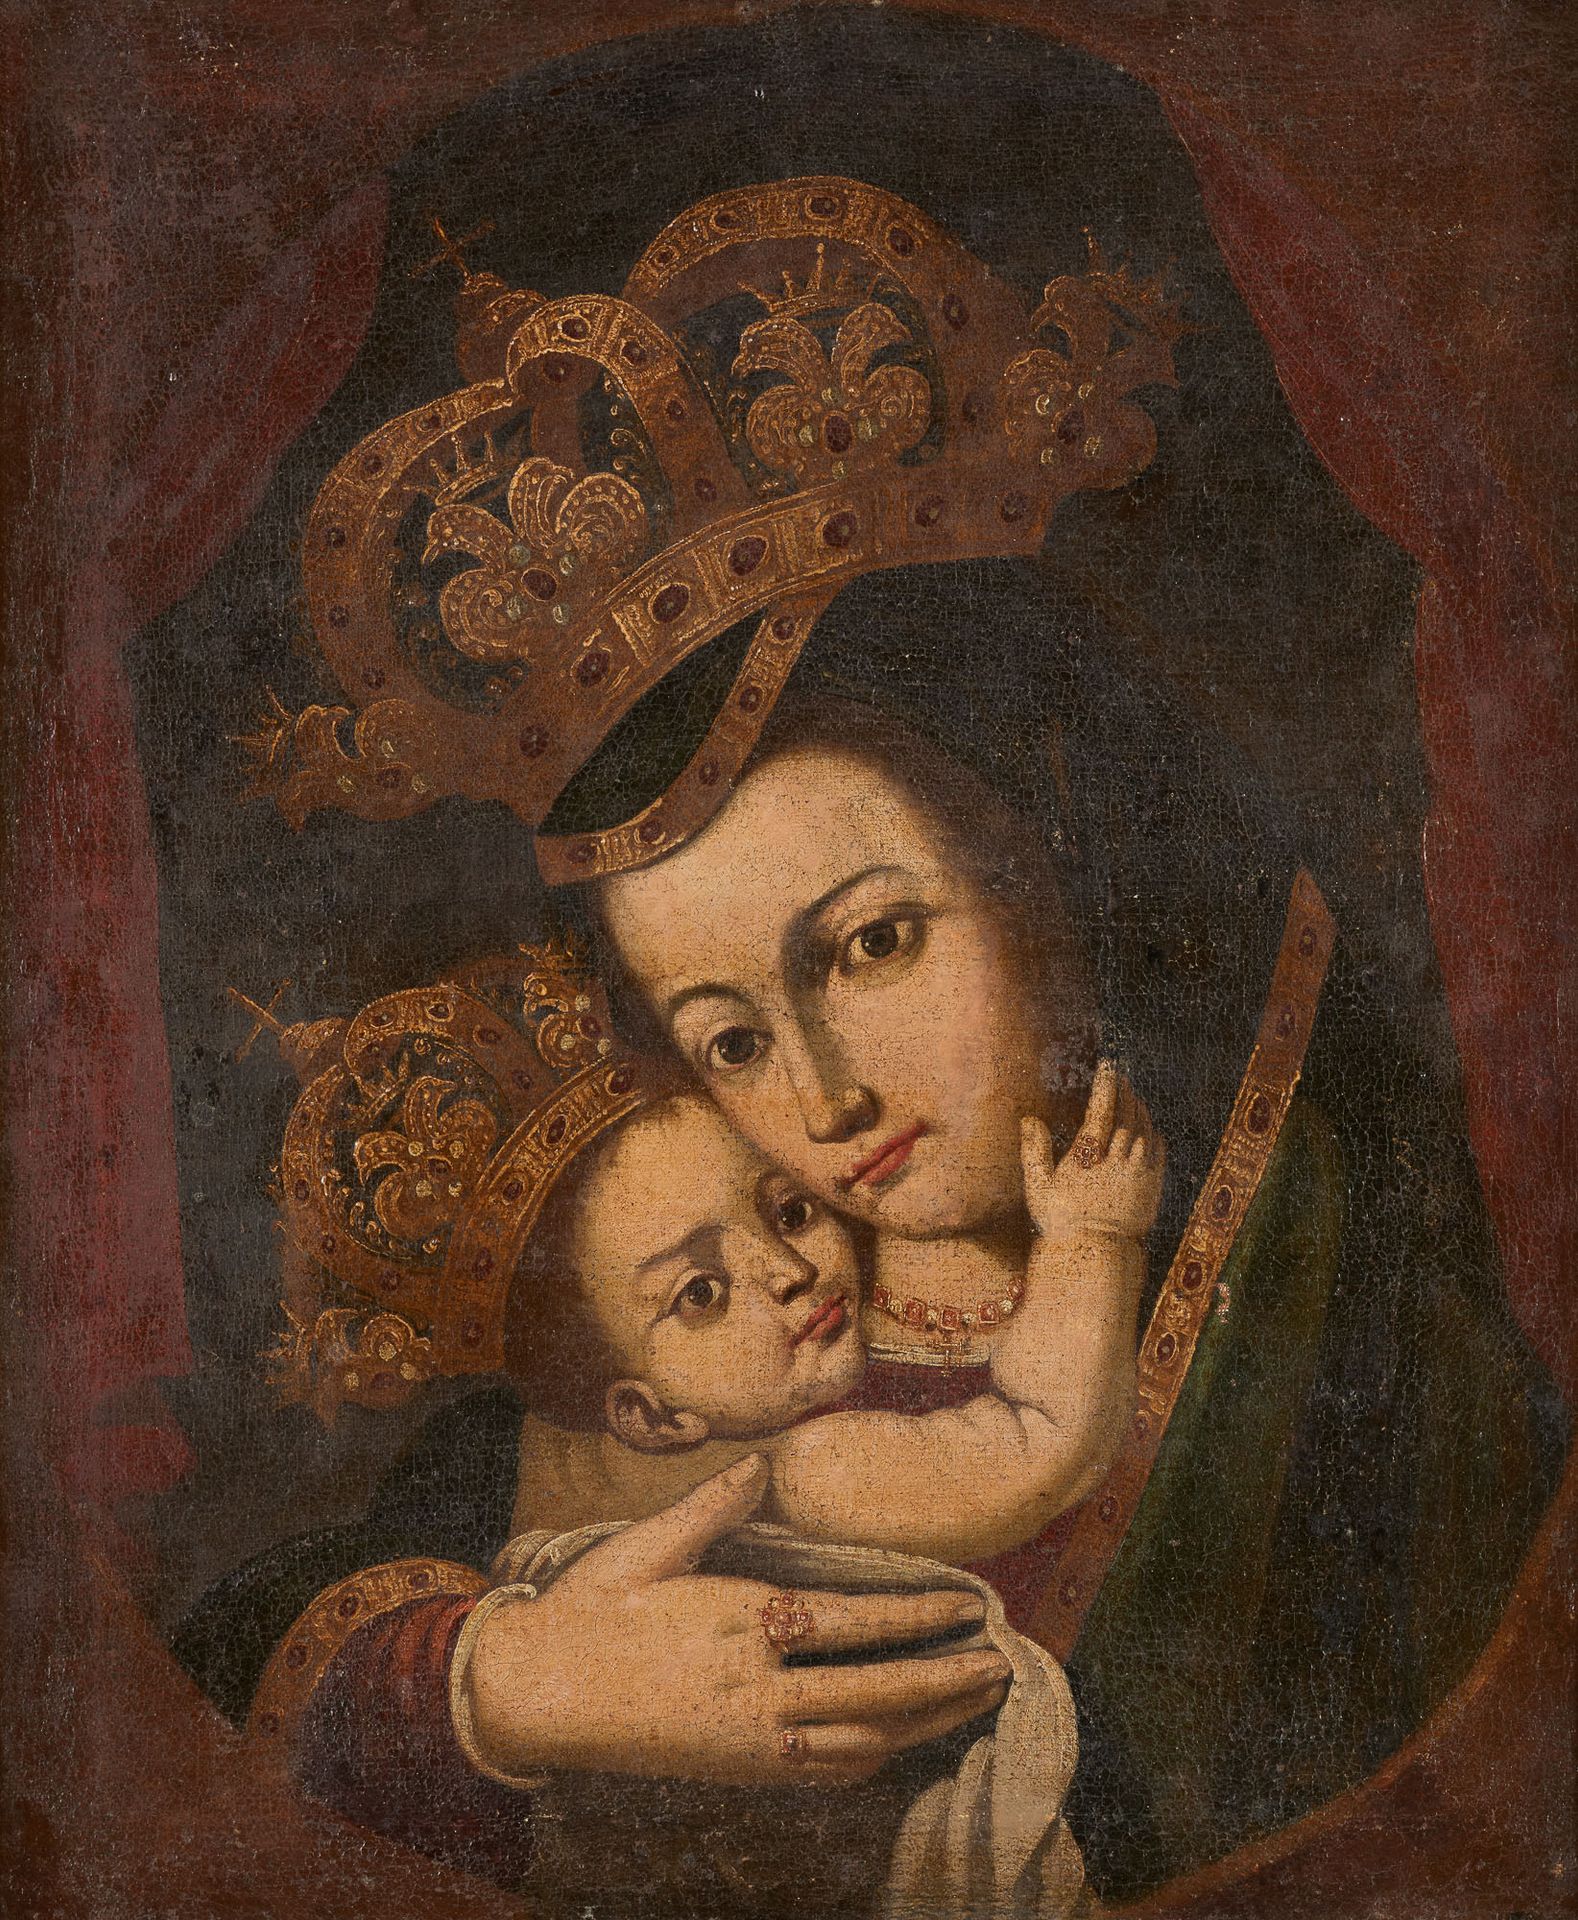 Amérique latine circa 1800. 布面油画：加冕的圣母和儿童。

尺寸：58 x 48厘米。